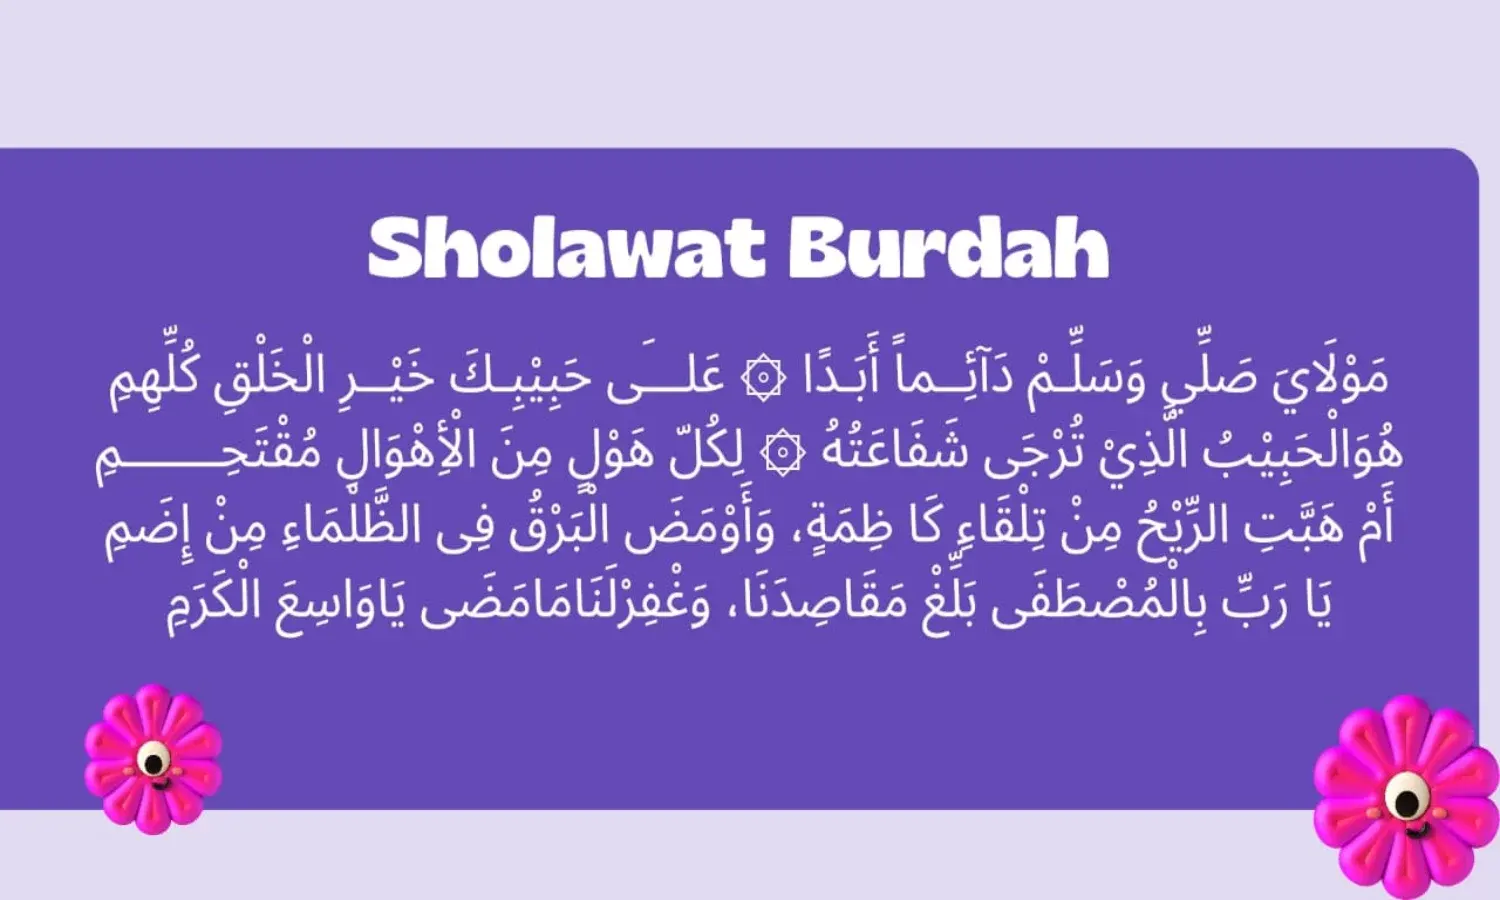 Lirik Sholawat Burdah Arab, Latin, Arti, Manfaat dan Waktu Amalan